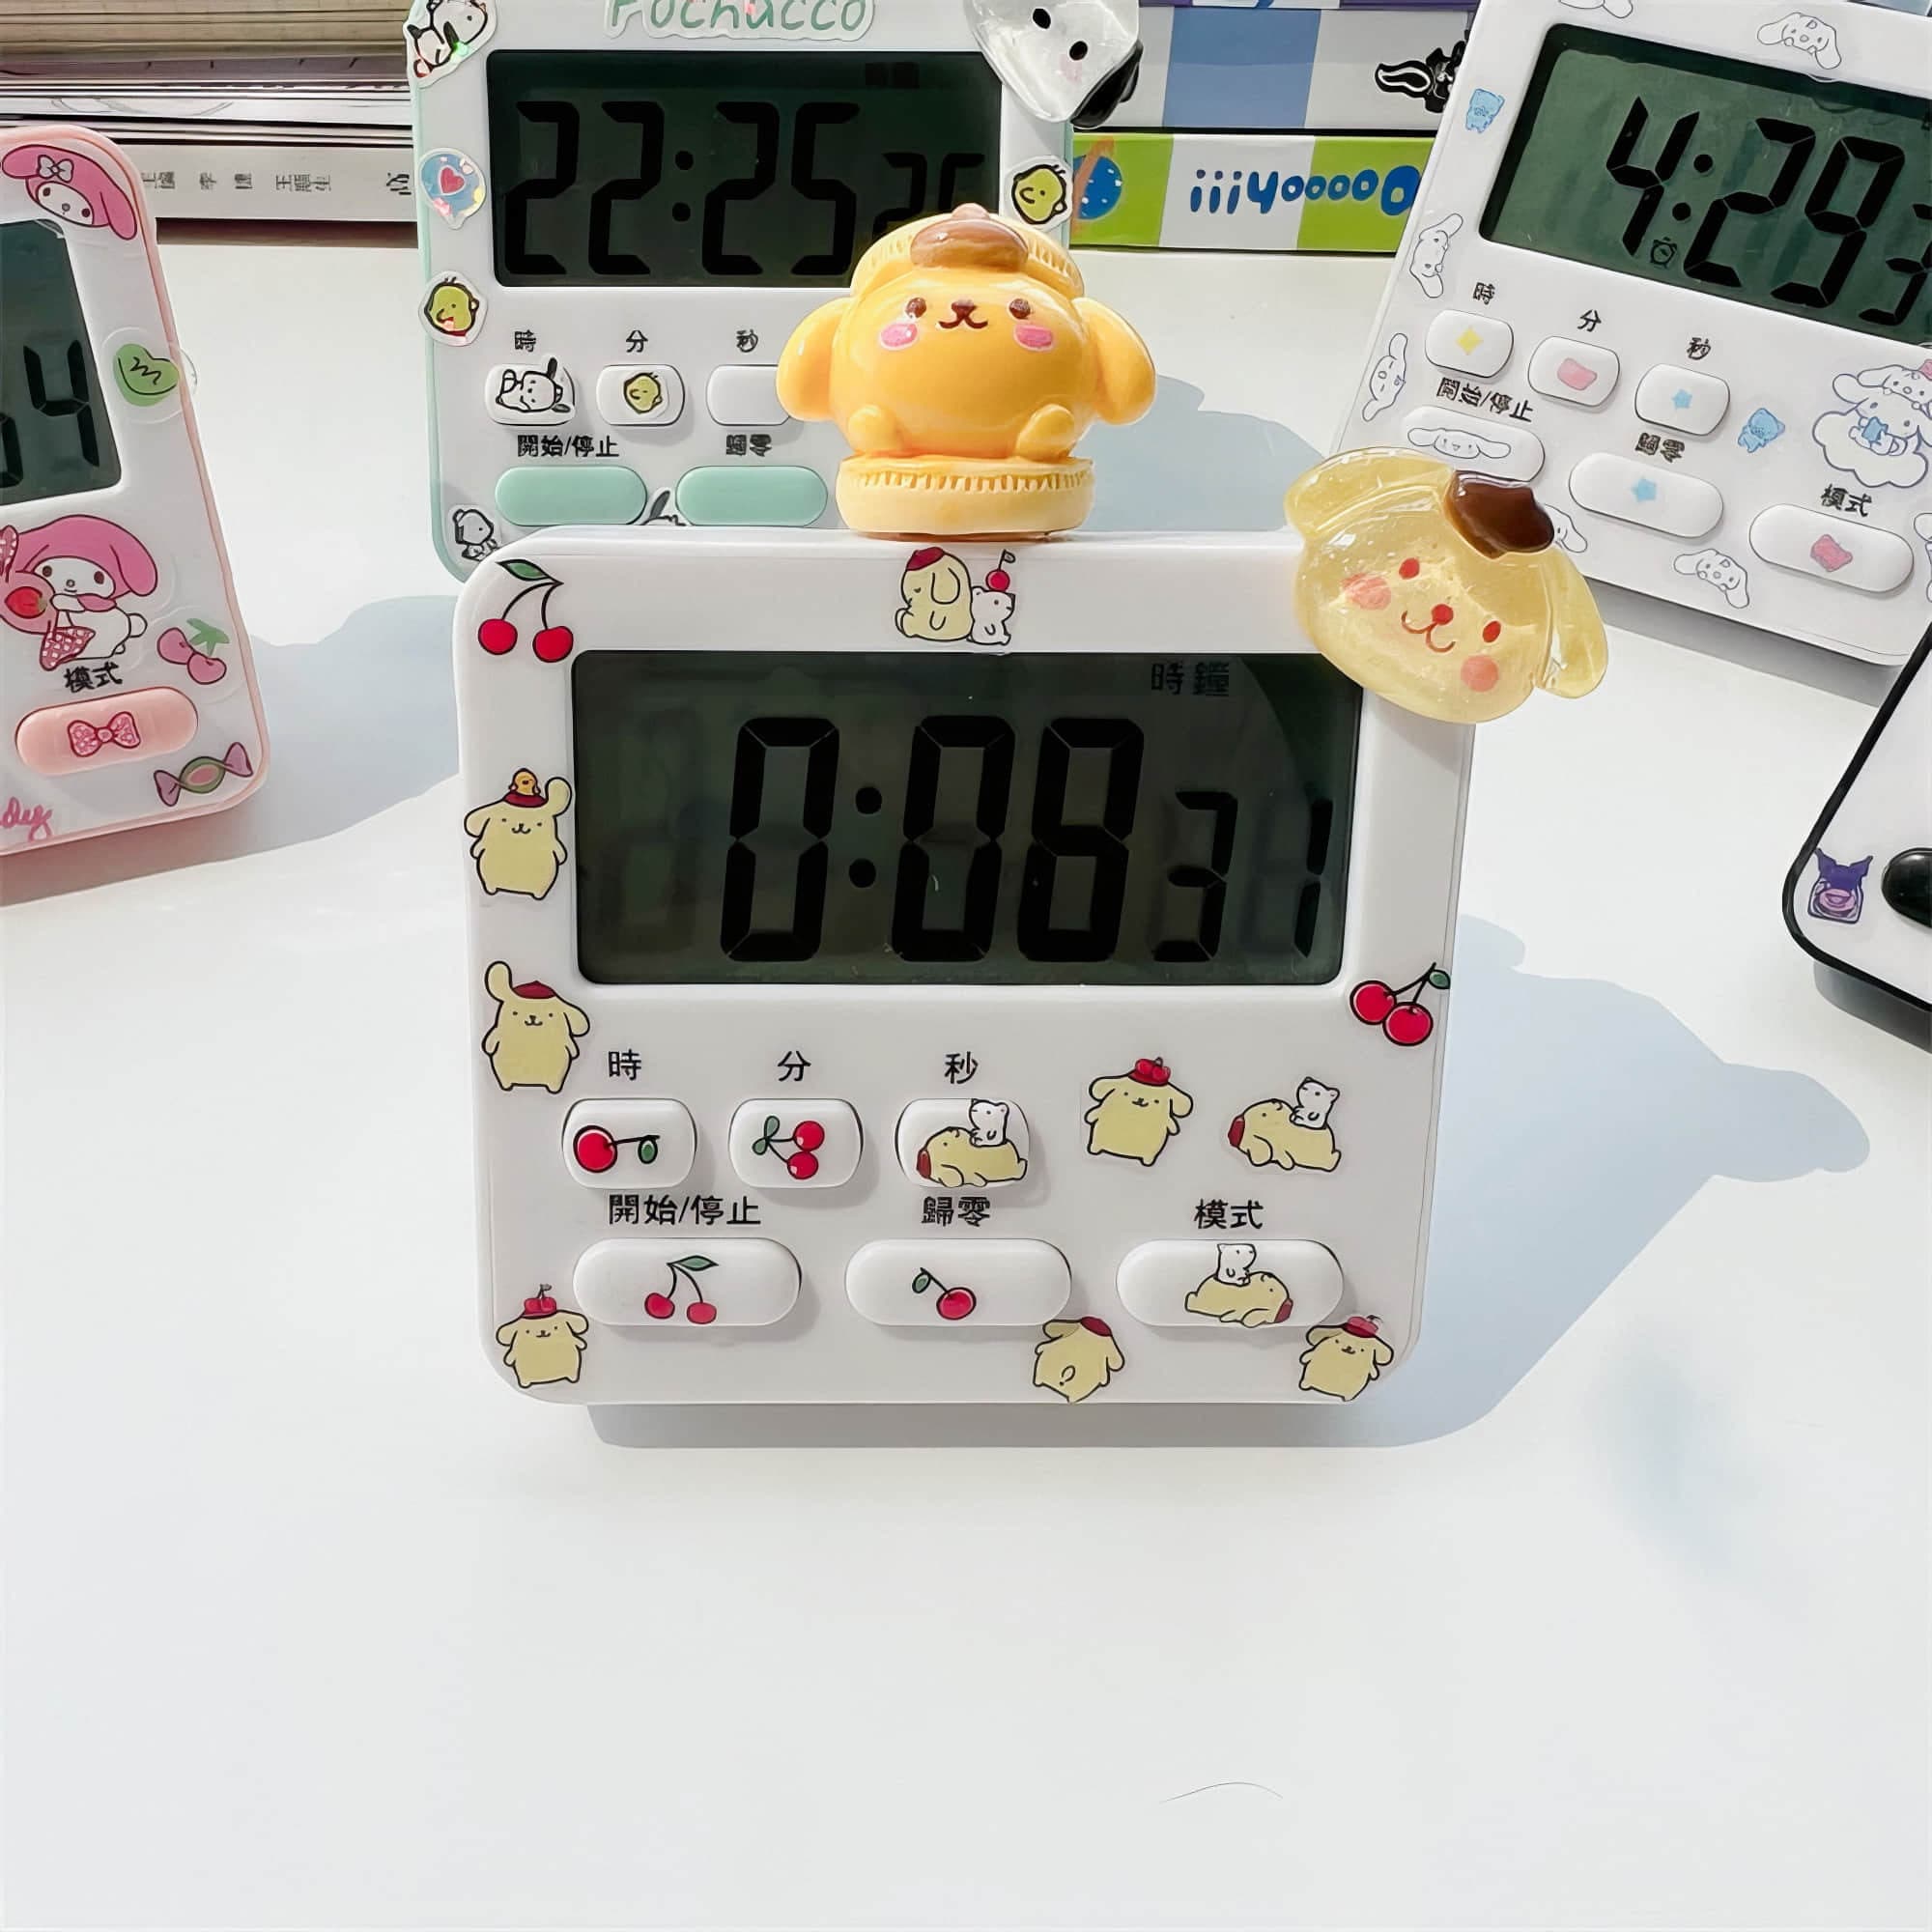 Kitchen Timer, Digital Timer For Cooking, Egg Timer, Cute Desk